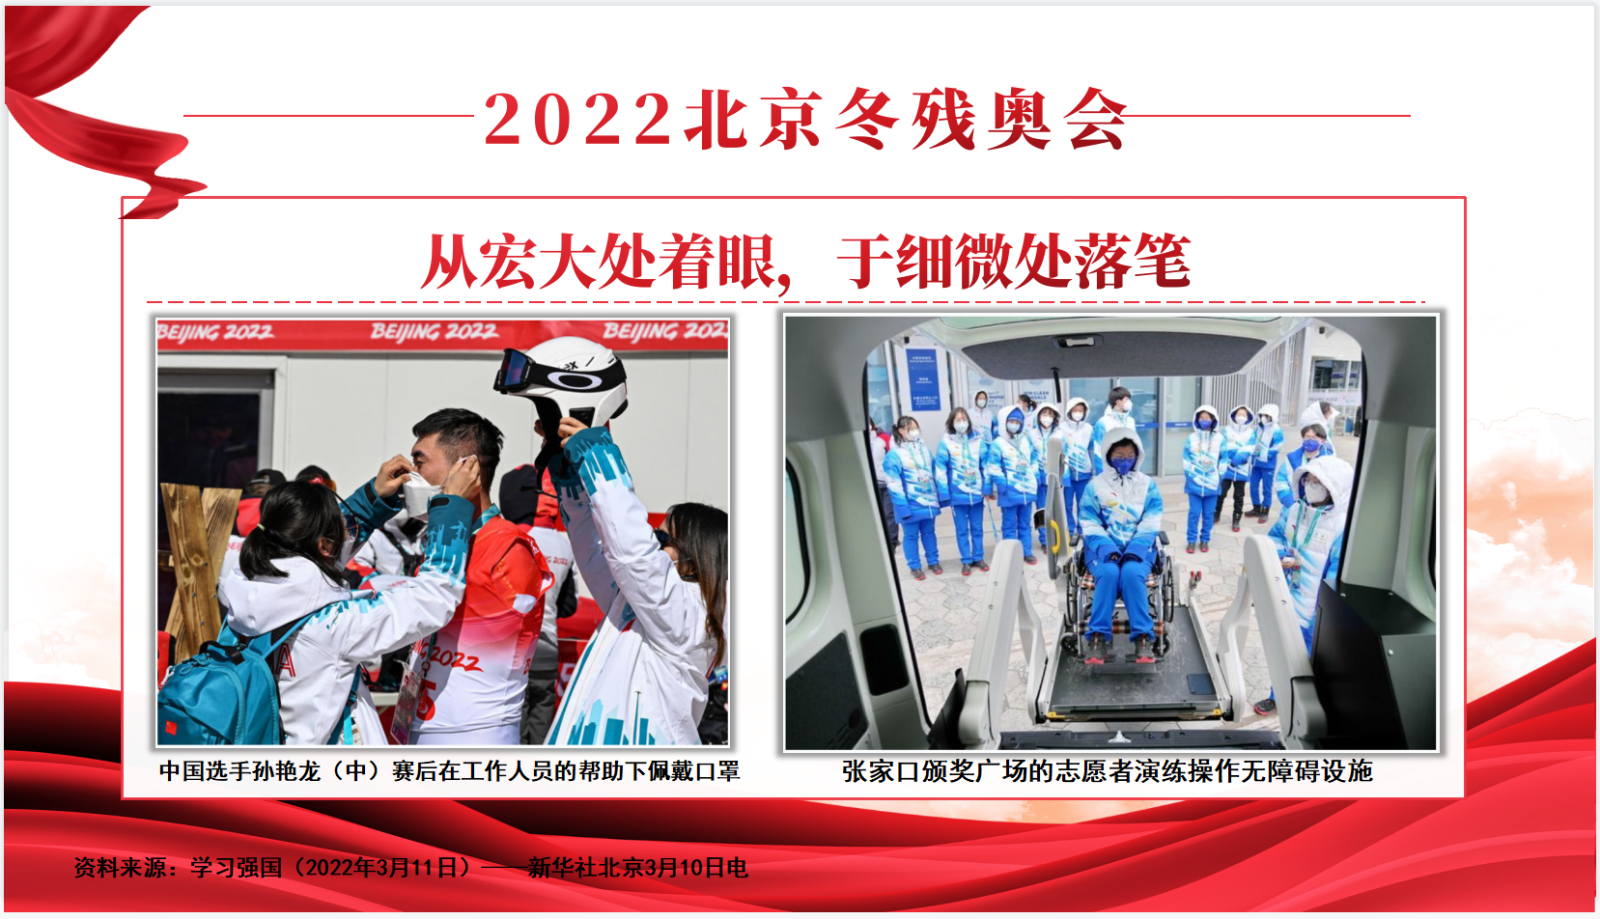 图 4_2022 北京冬残奥会